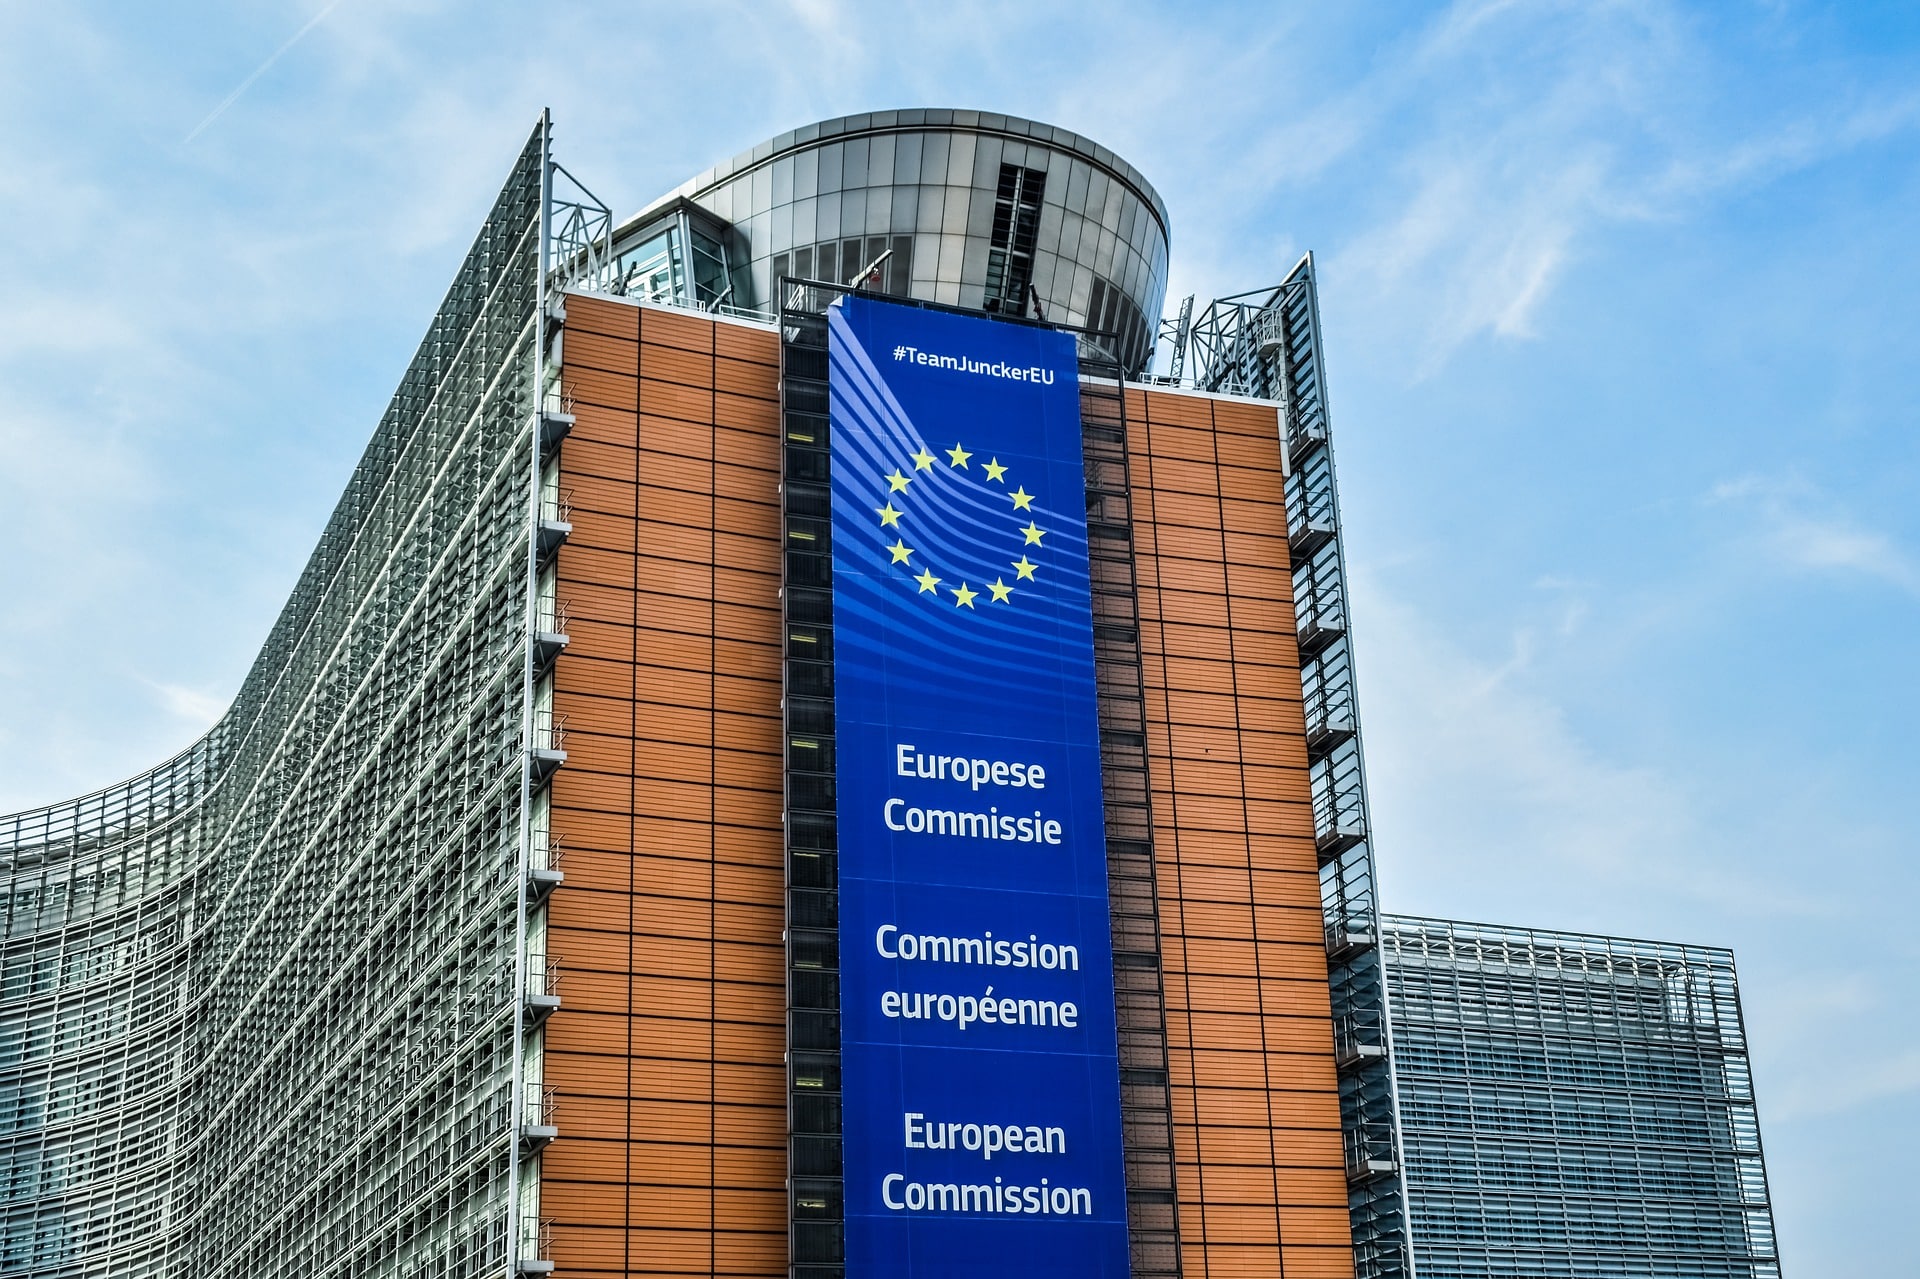 Les nouvelles règles ambitieuses en matière de technologie de l’UE seront reportées à 2022